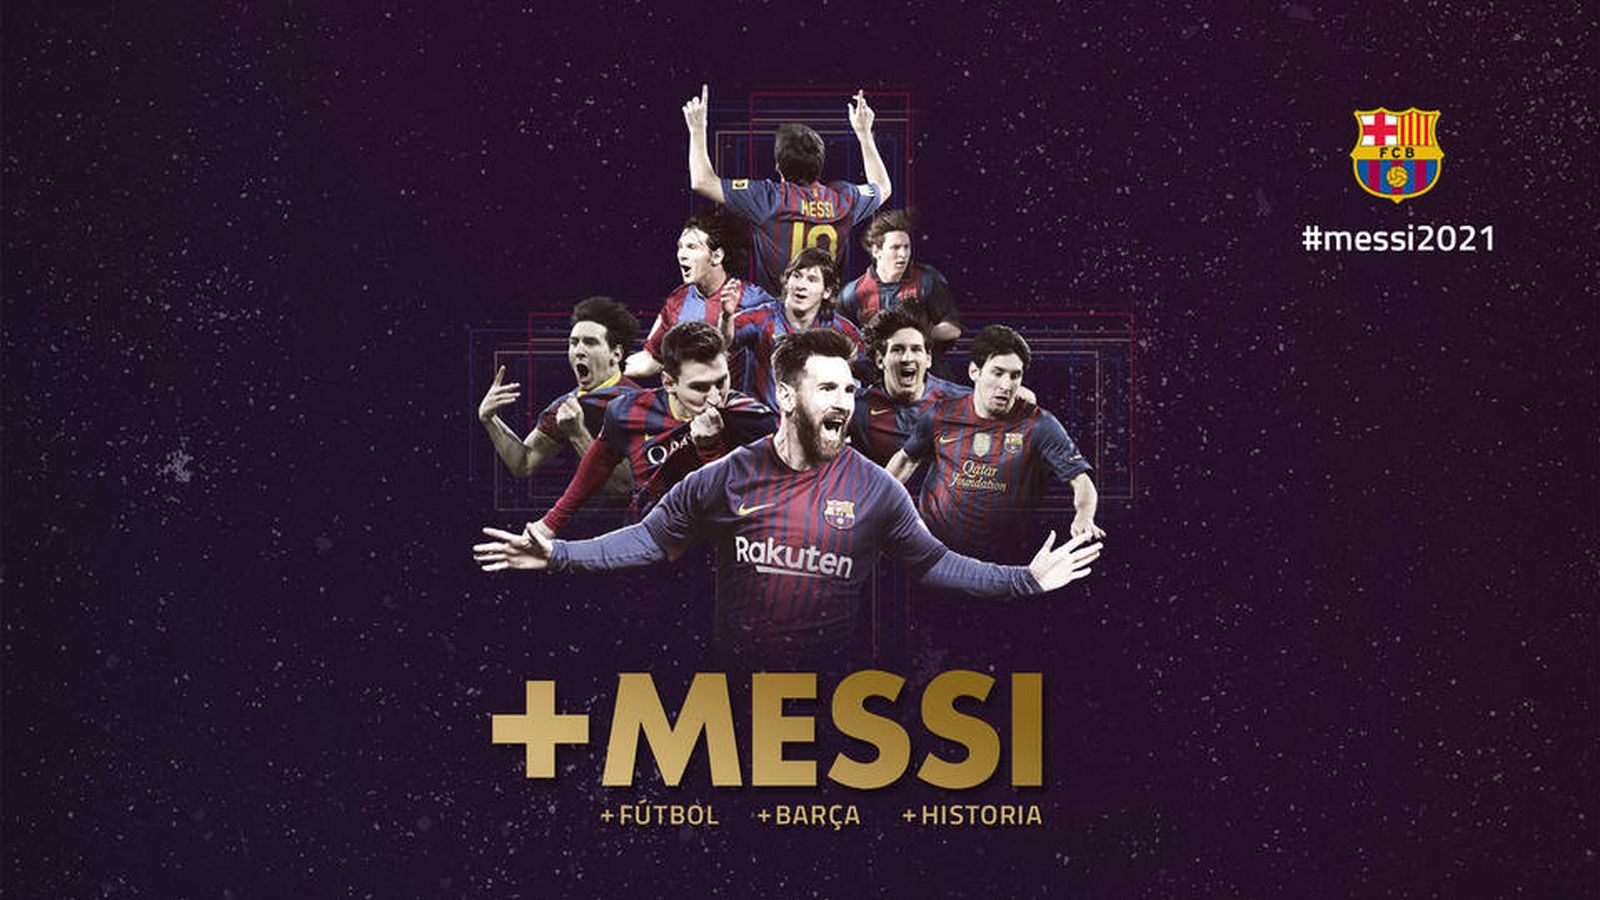 Foto: Ilustración del FC Barcelona para anunciar la renovación de Messi. (fcbarcelona.es)